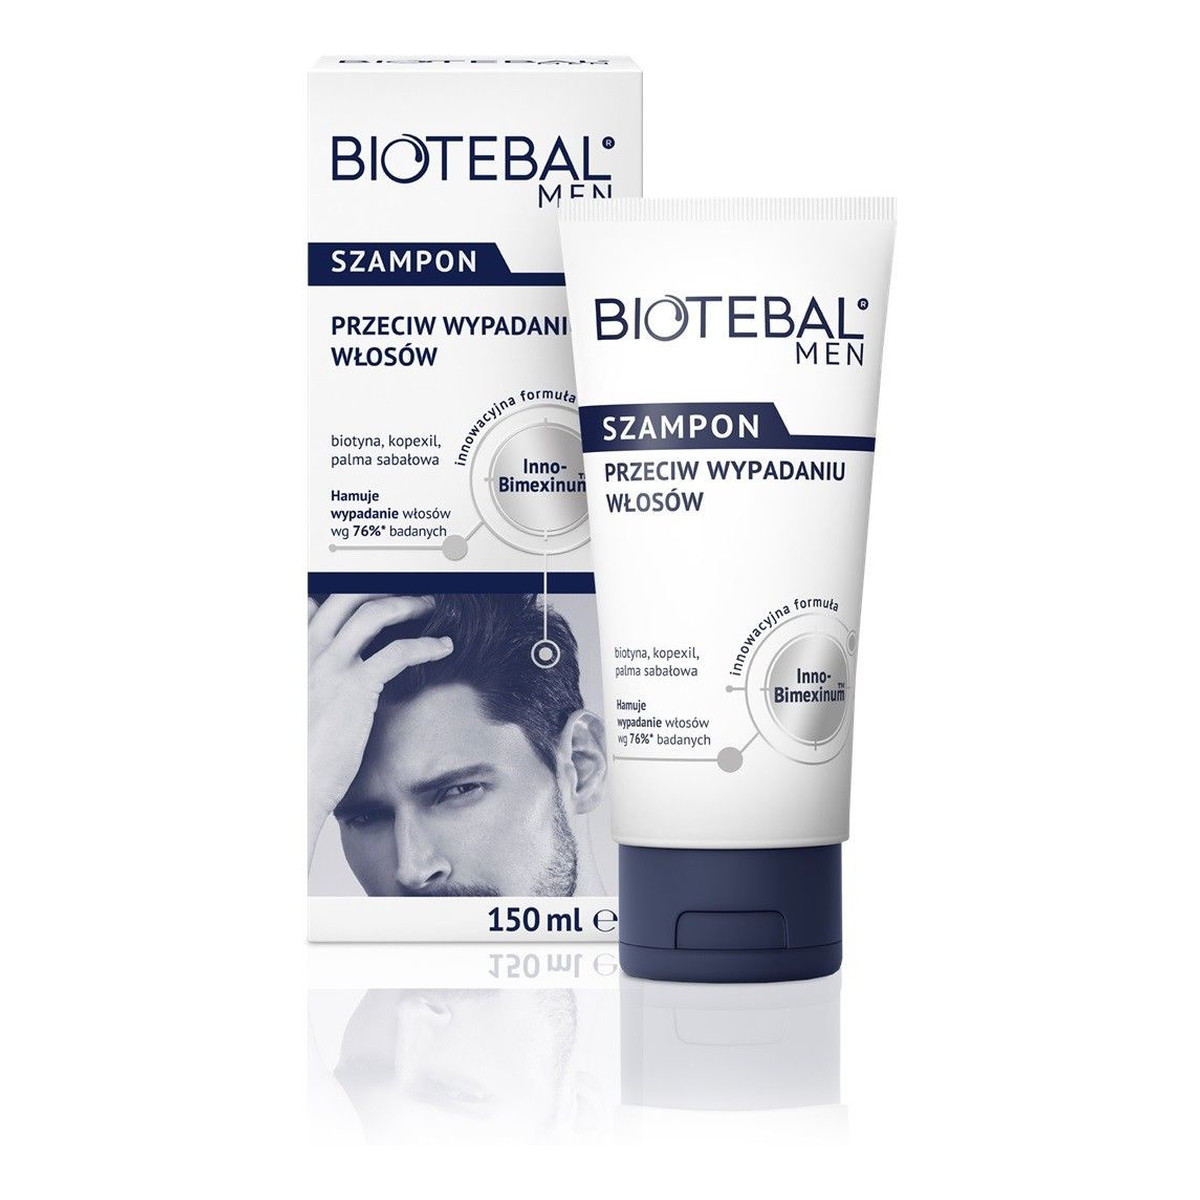 Biotebal Men szampon przeciw wypadaniu włosów 150ml